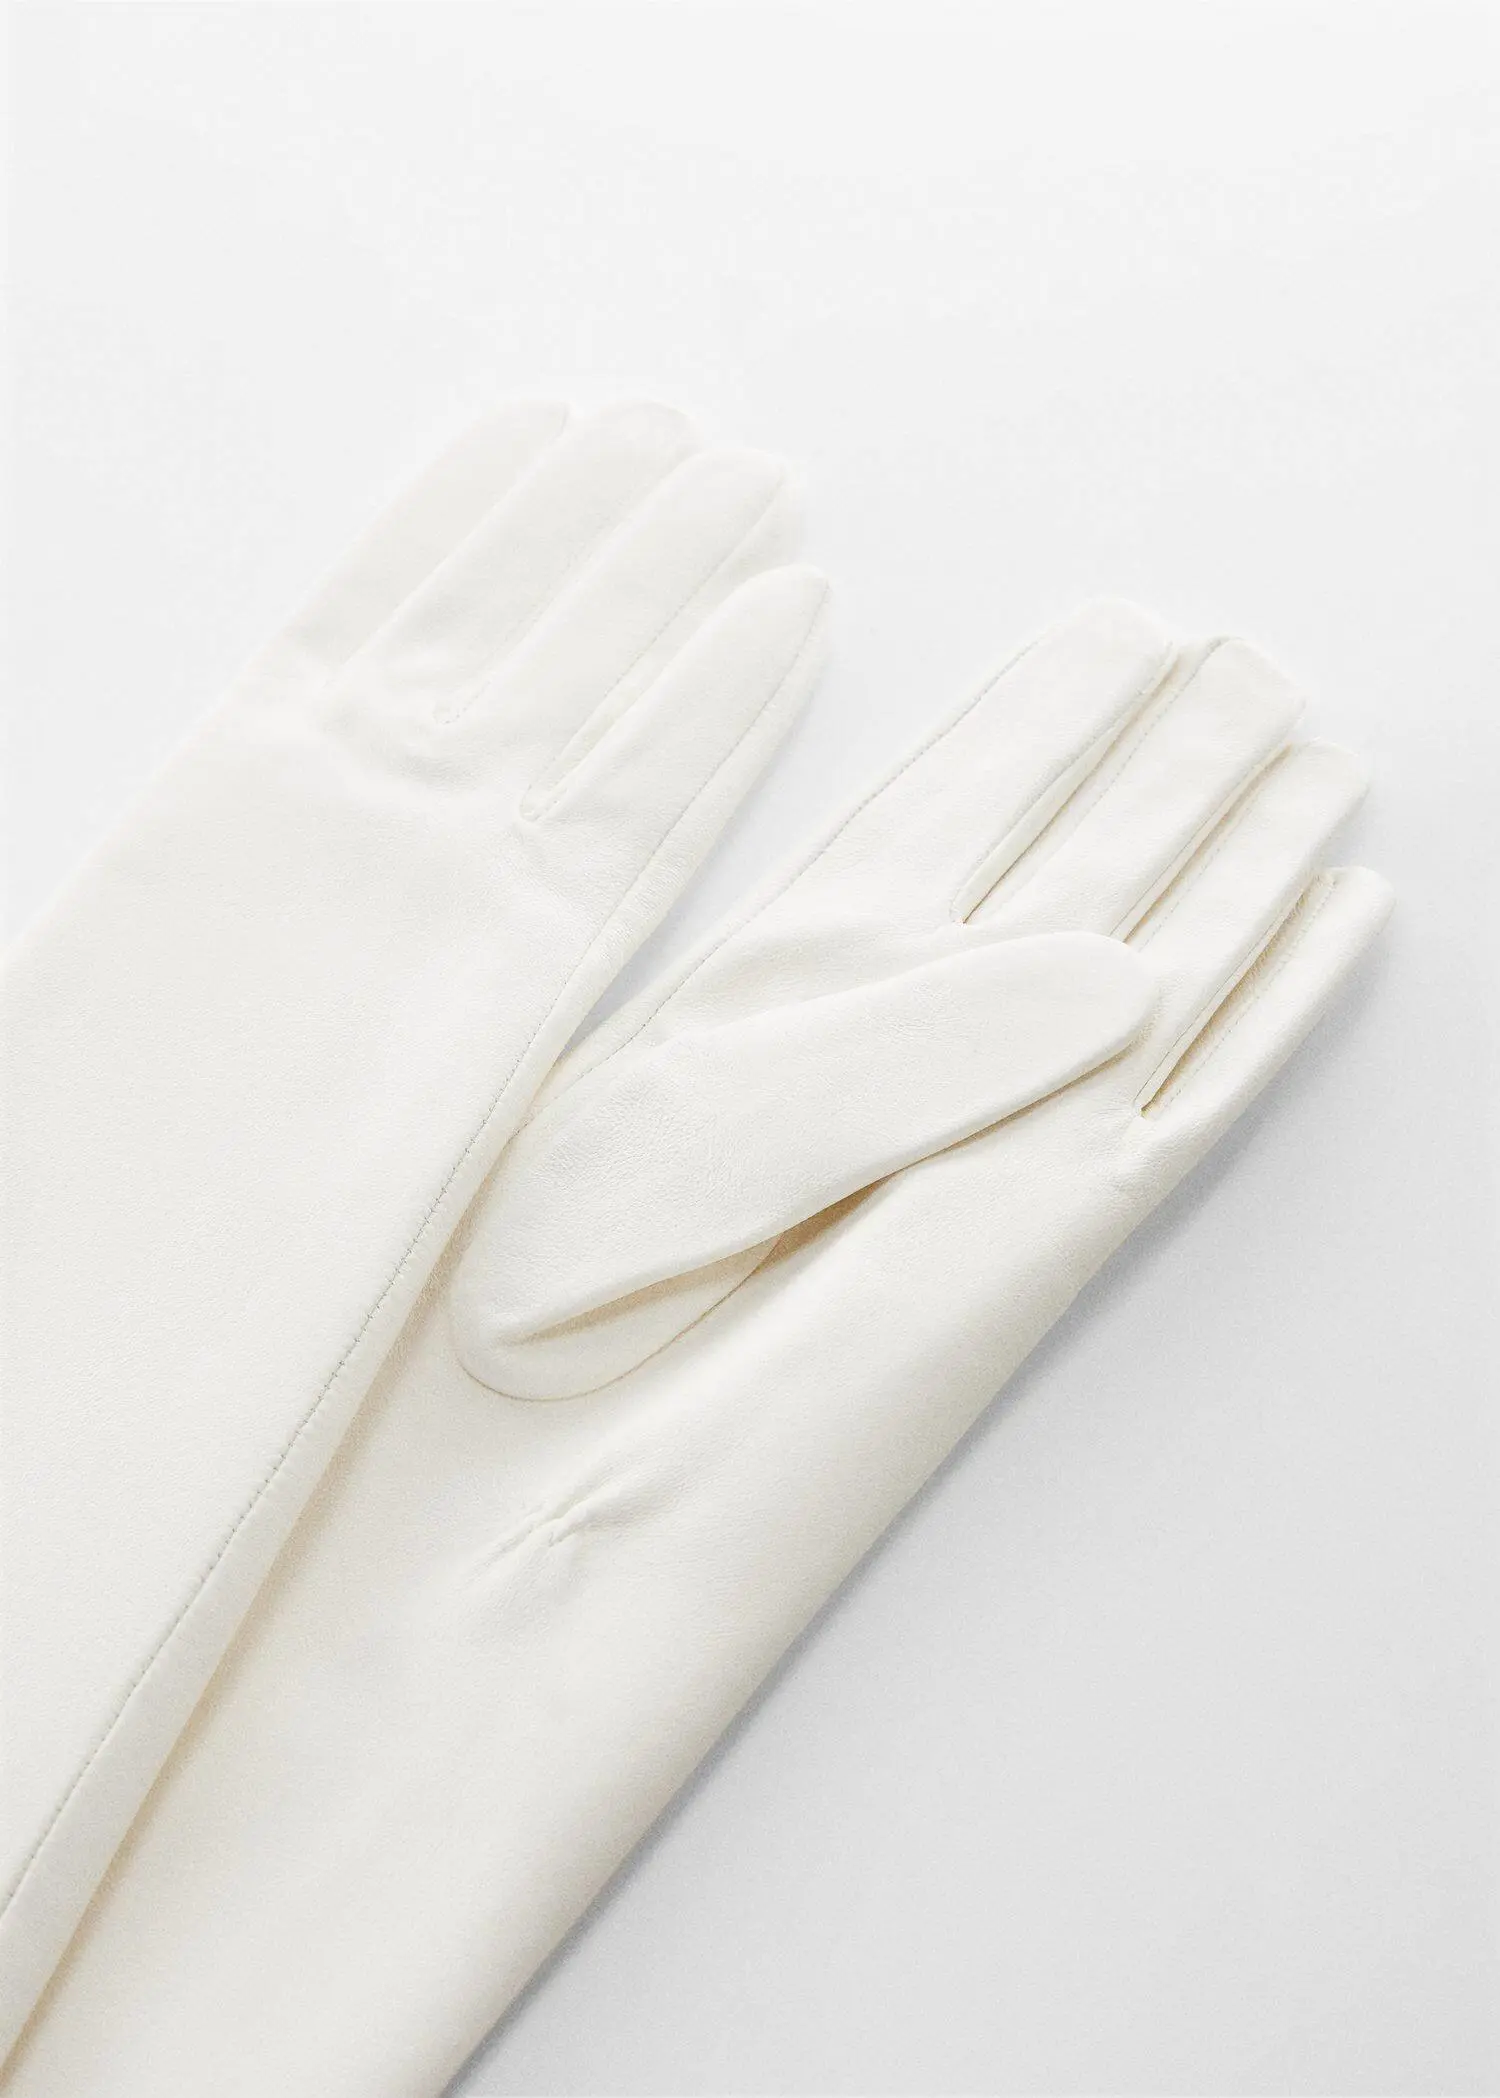 Mango Leather long gloves. 2